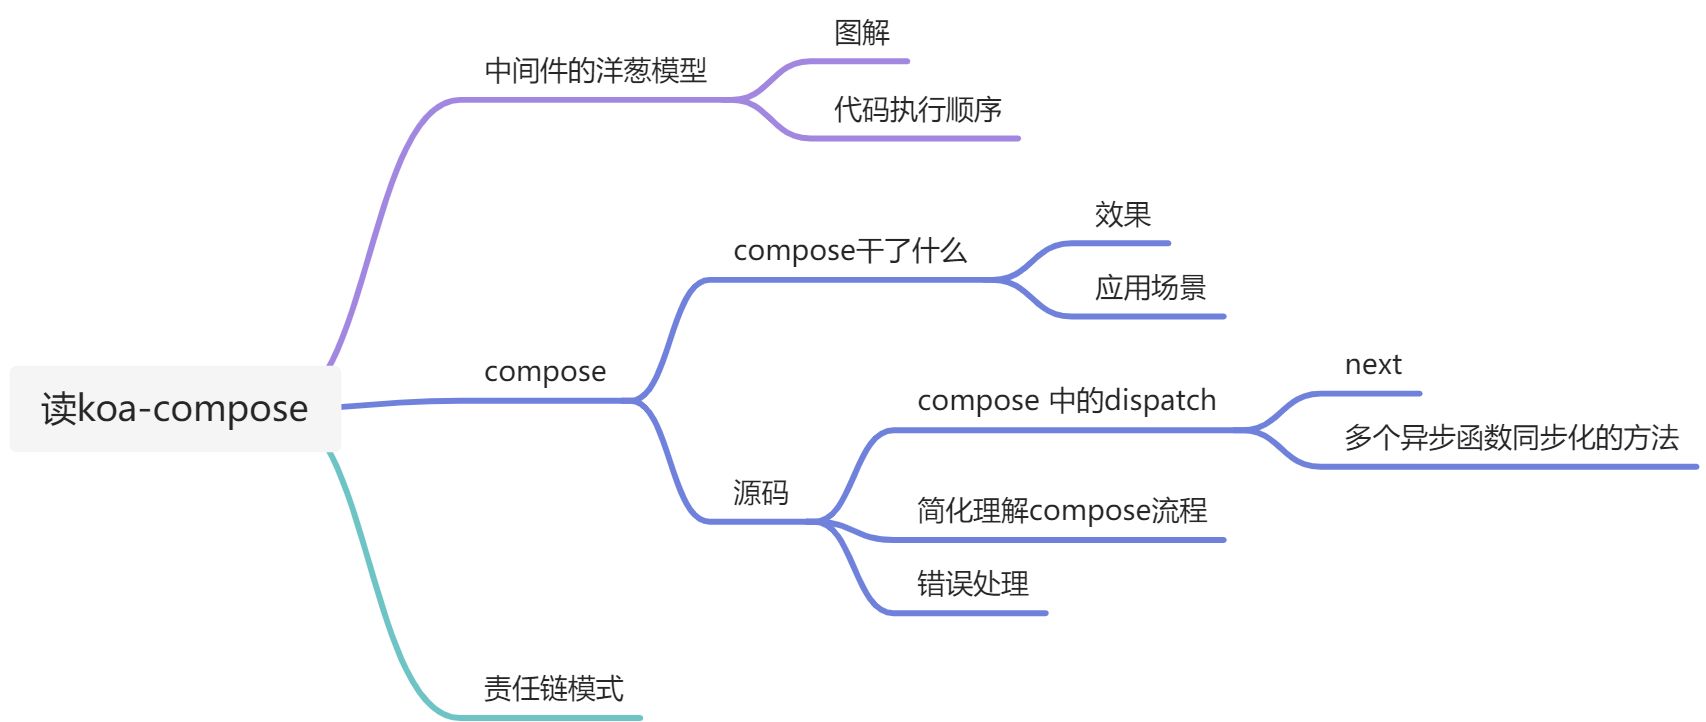 【若川视野 x 源码共读】koa-compose - 图1